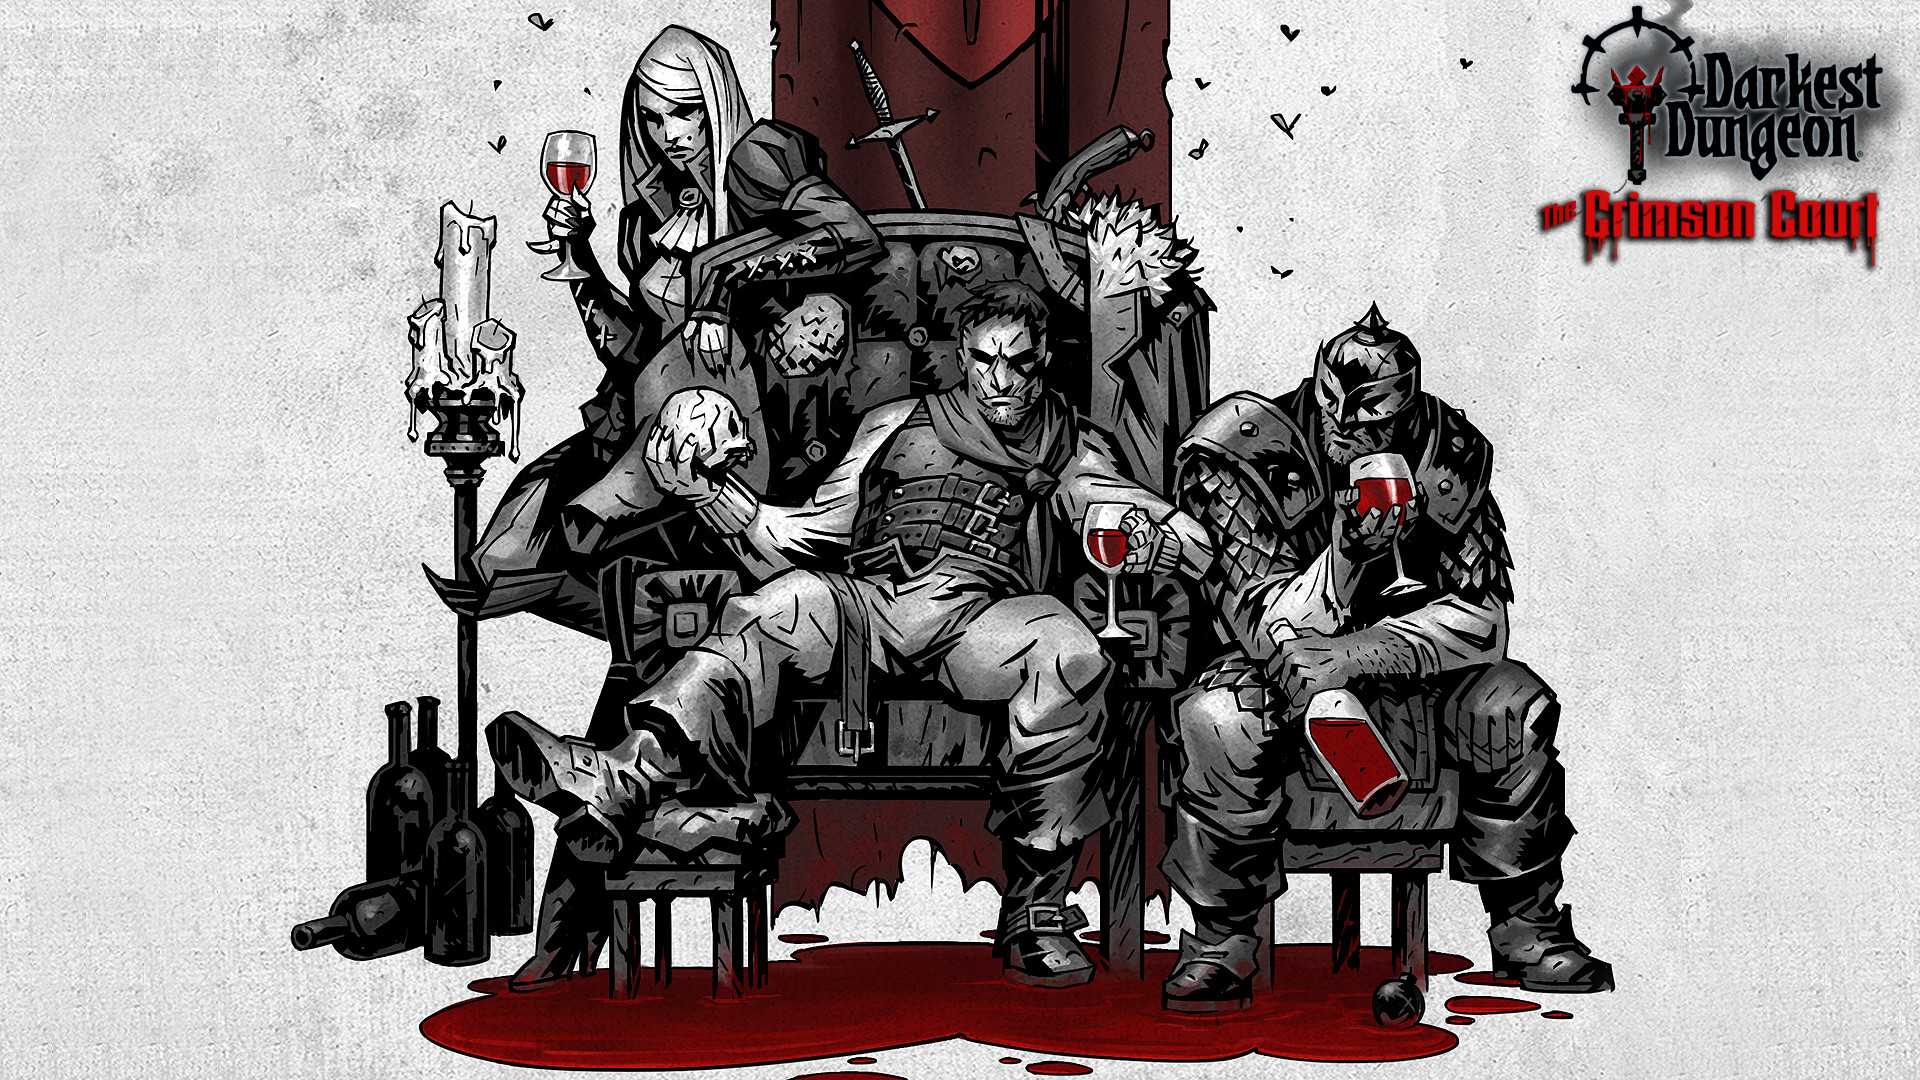 Darkest Dungeon®: The Crimson Court Featured Screenshot #1